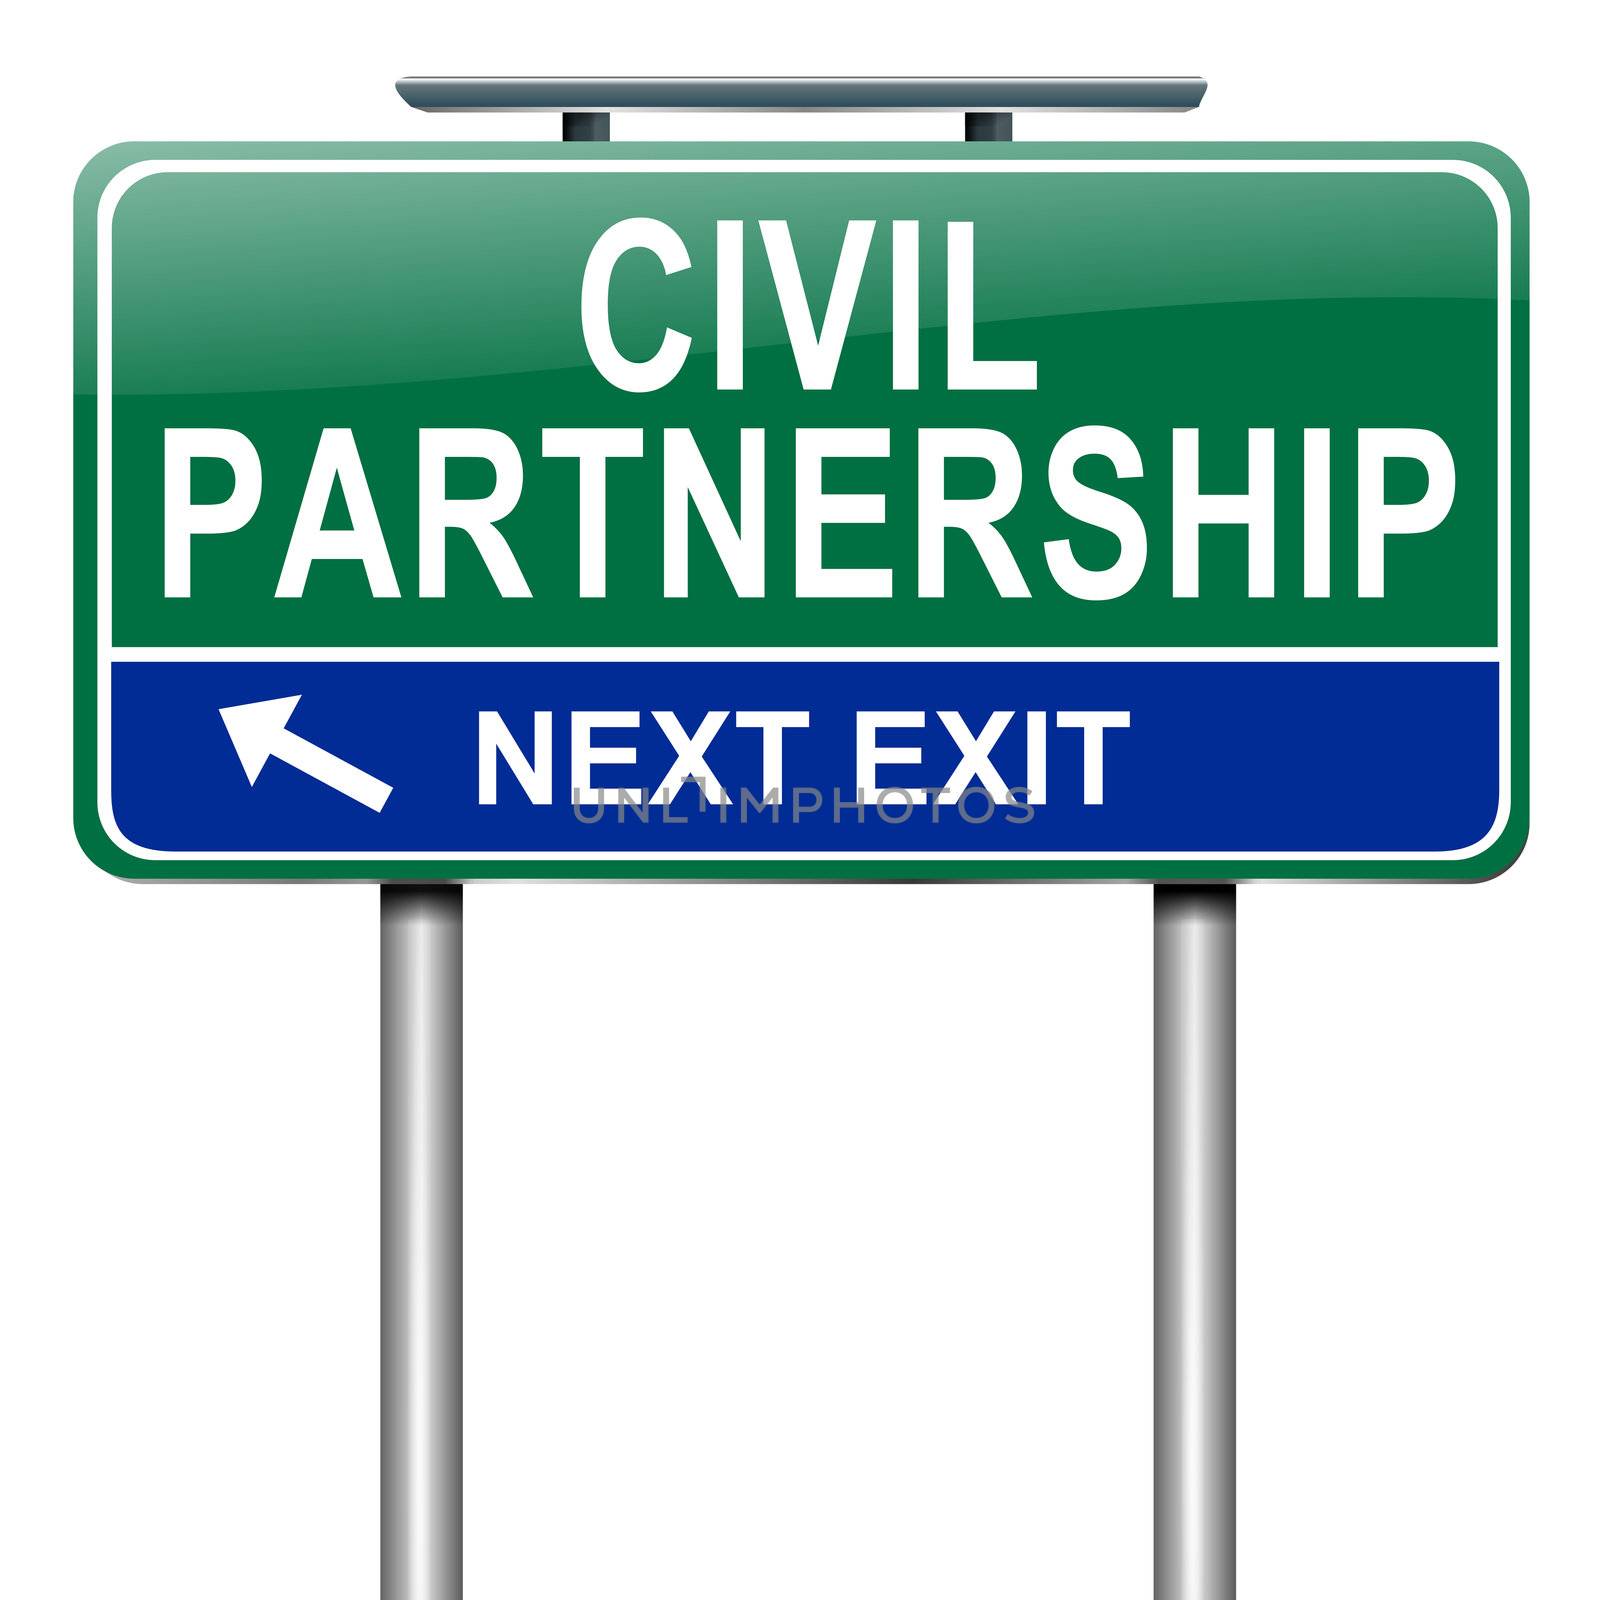 Civil Partnership concept. by 72soul